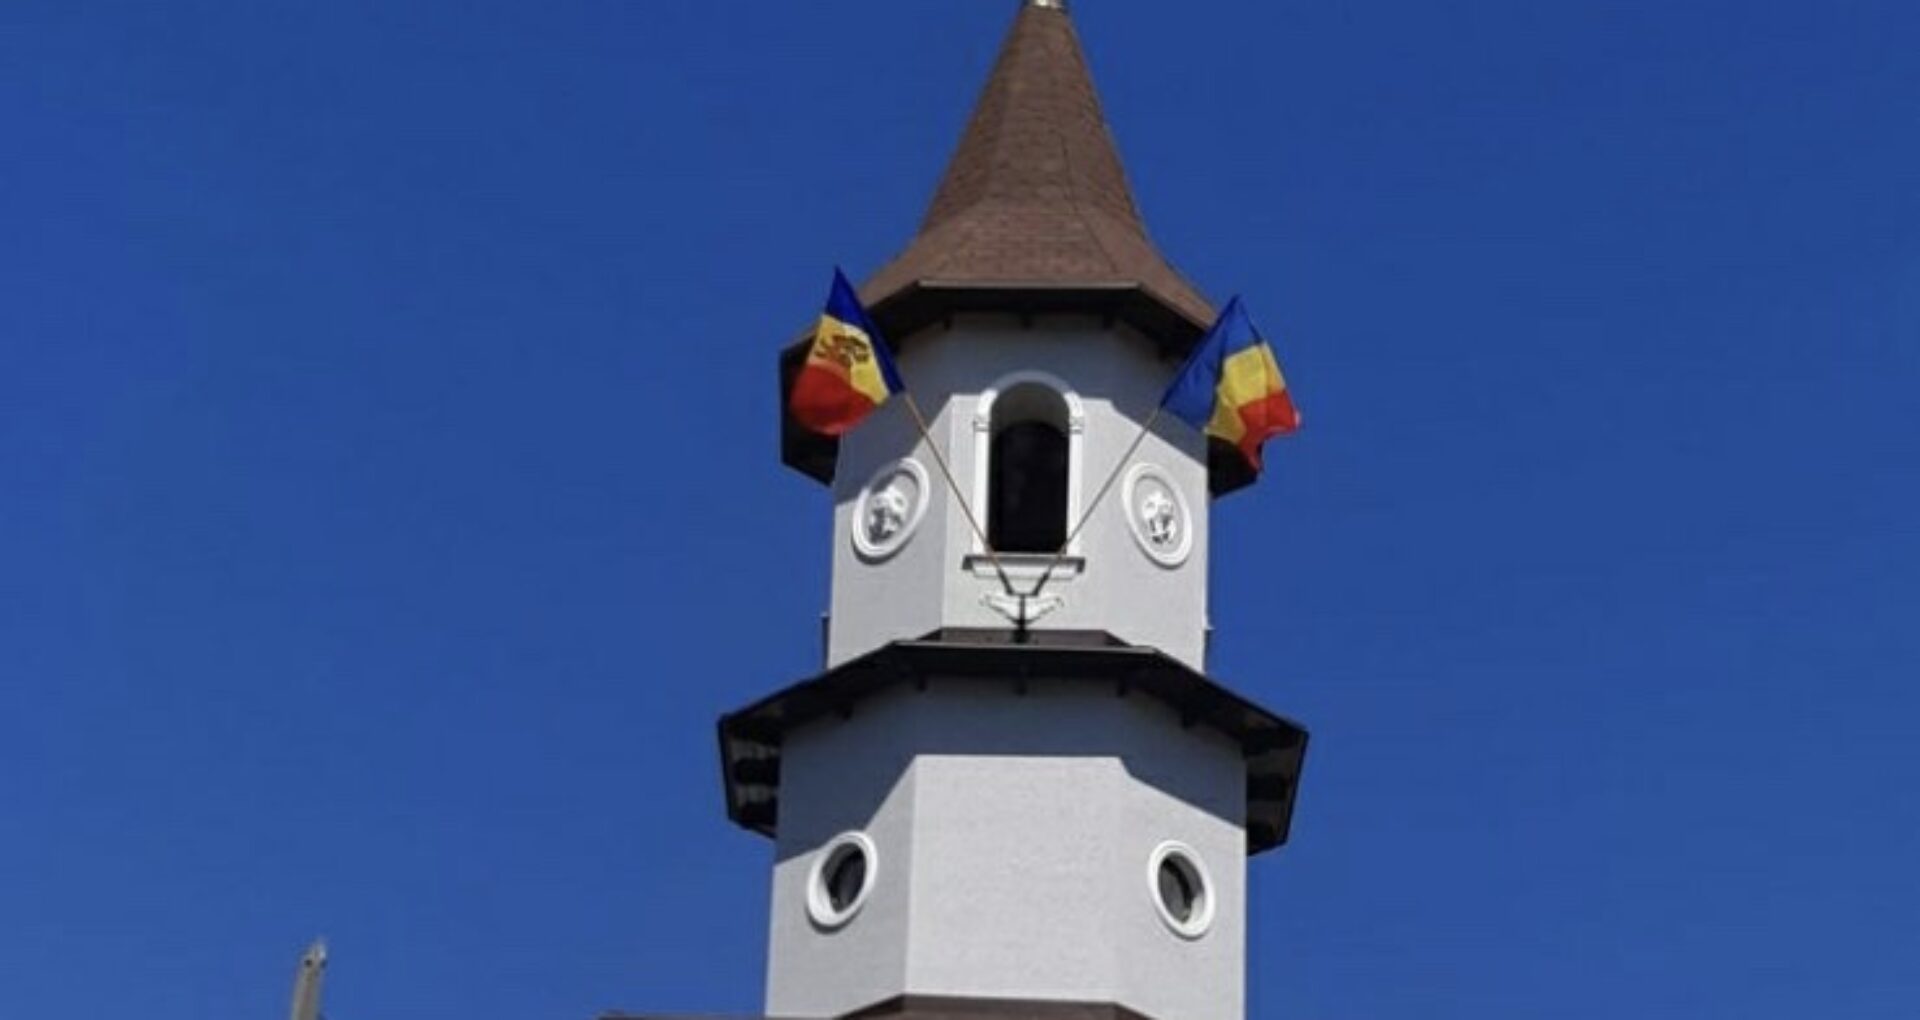 Mișcarea Politică UNIREA îi promite sprijin juridic preotului care riscă să fie amendat pentru că a arborat drapelul R. Moldova și pe cel al României pe clopotniță